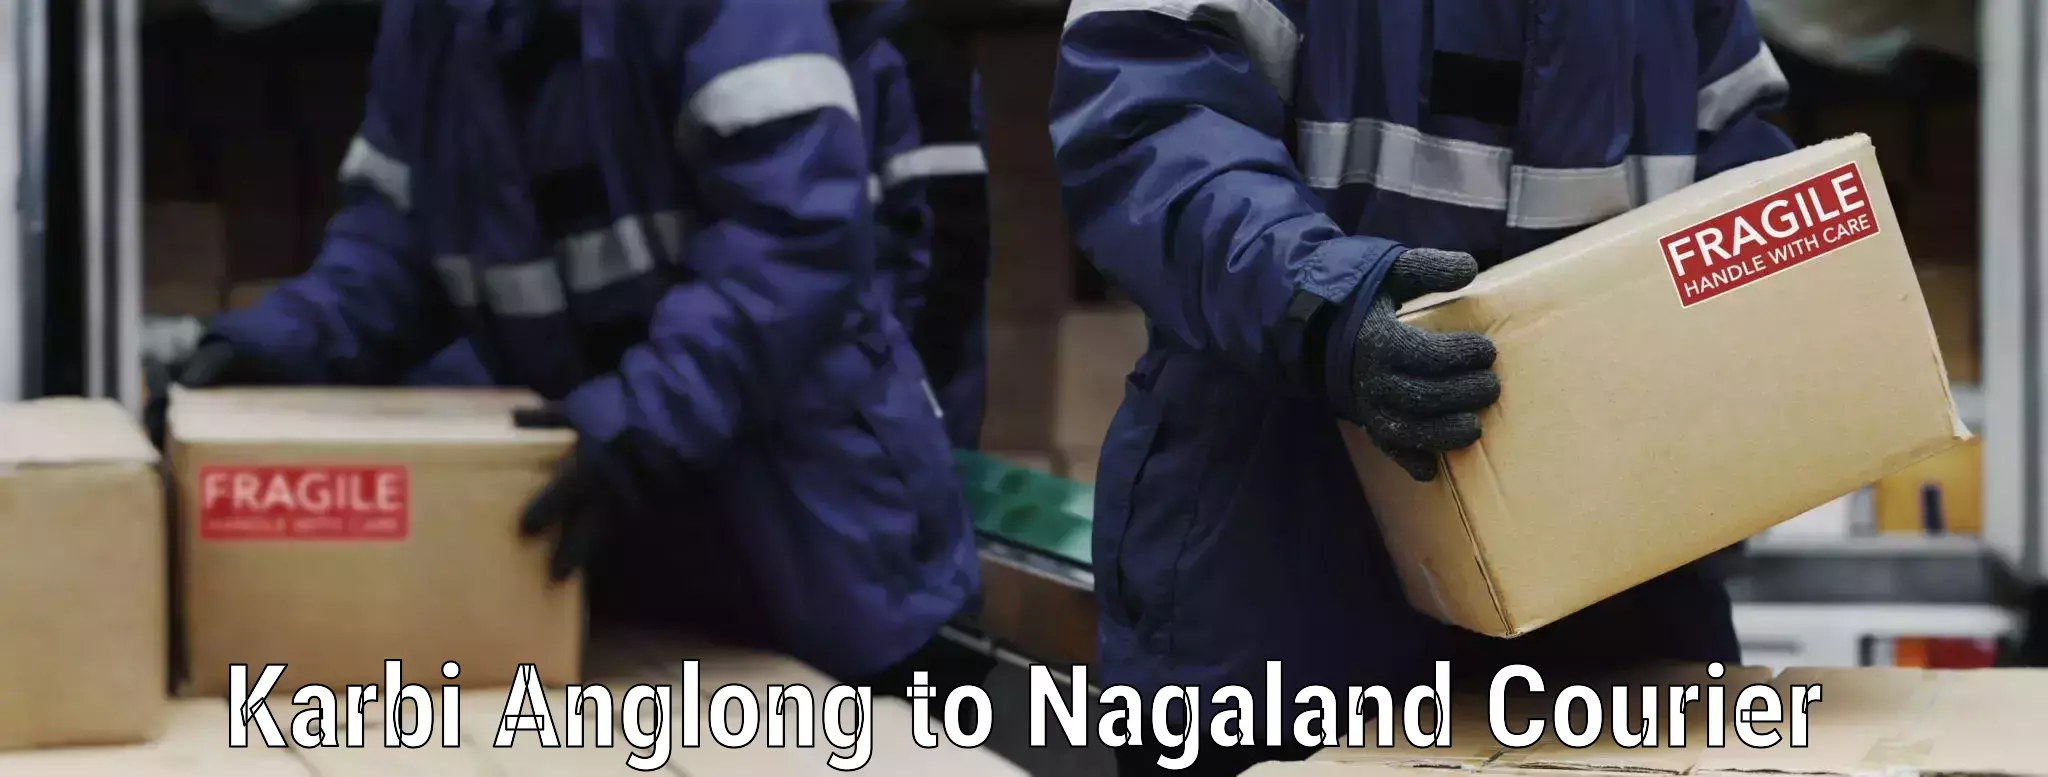 Stress-free moving Karbi Anglong to Longleng